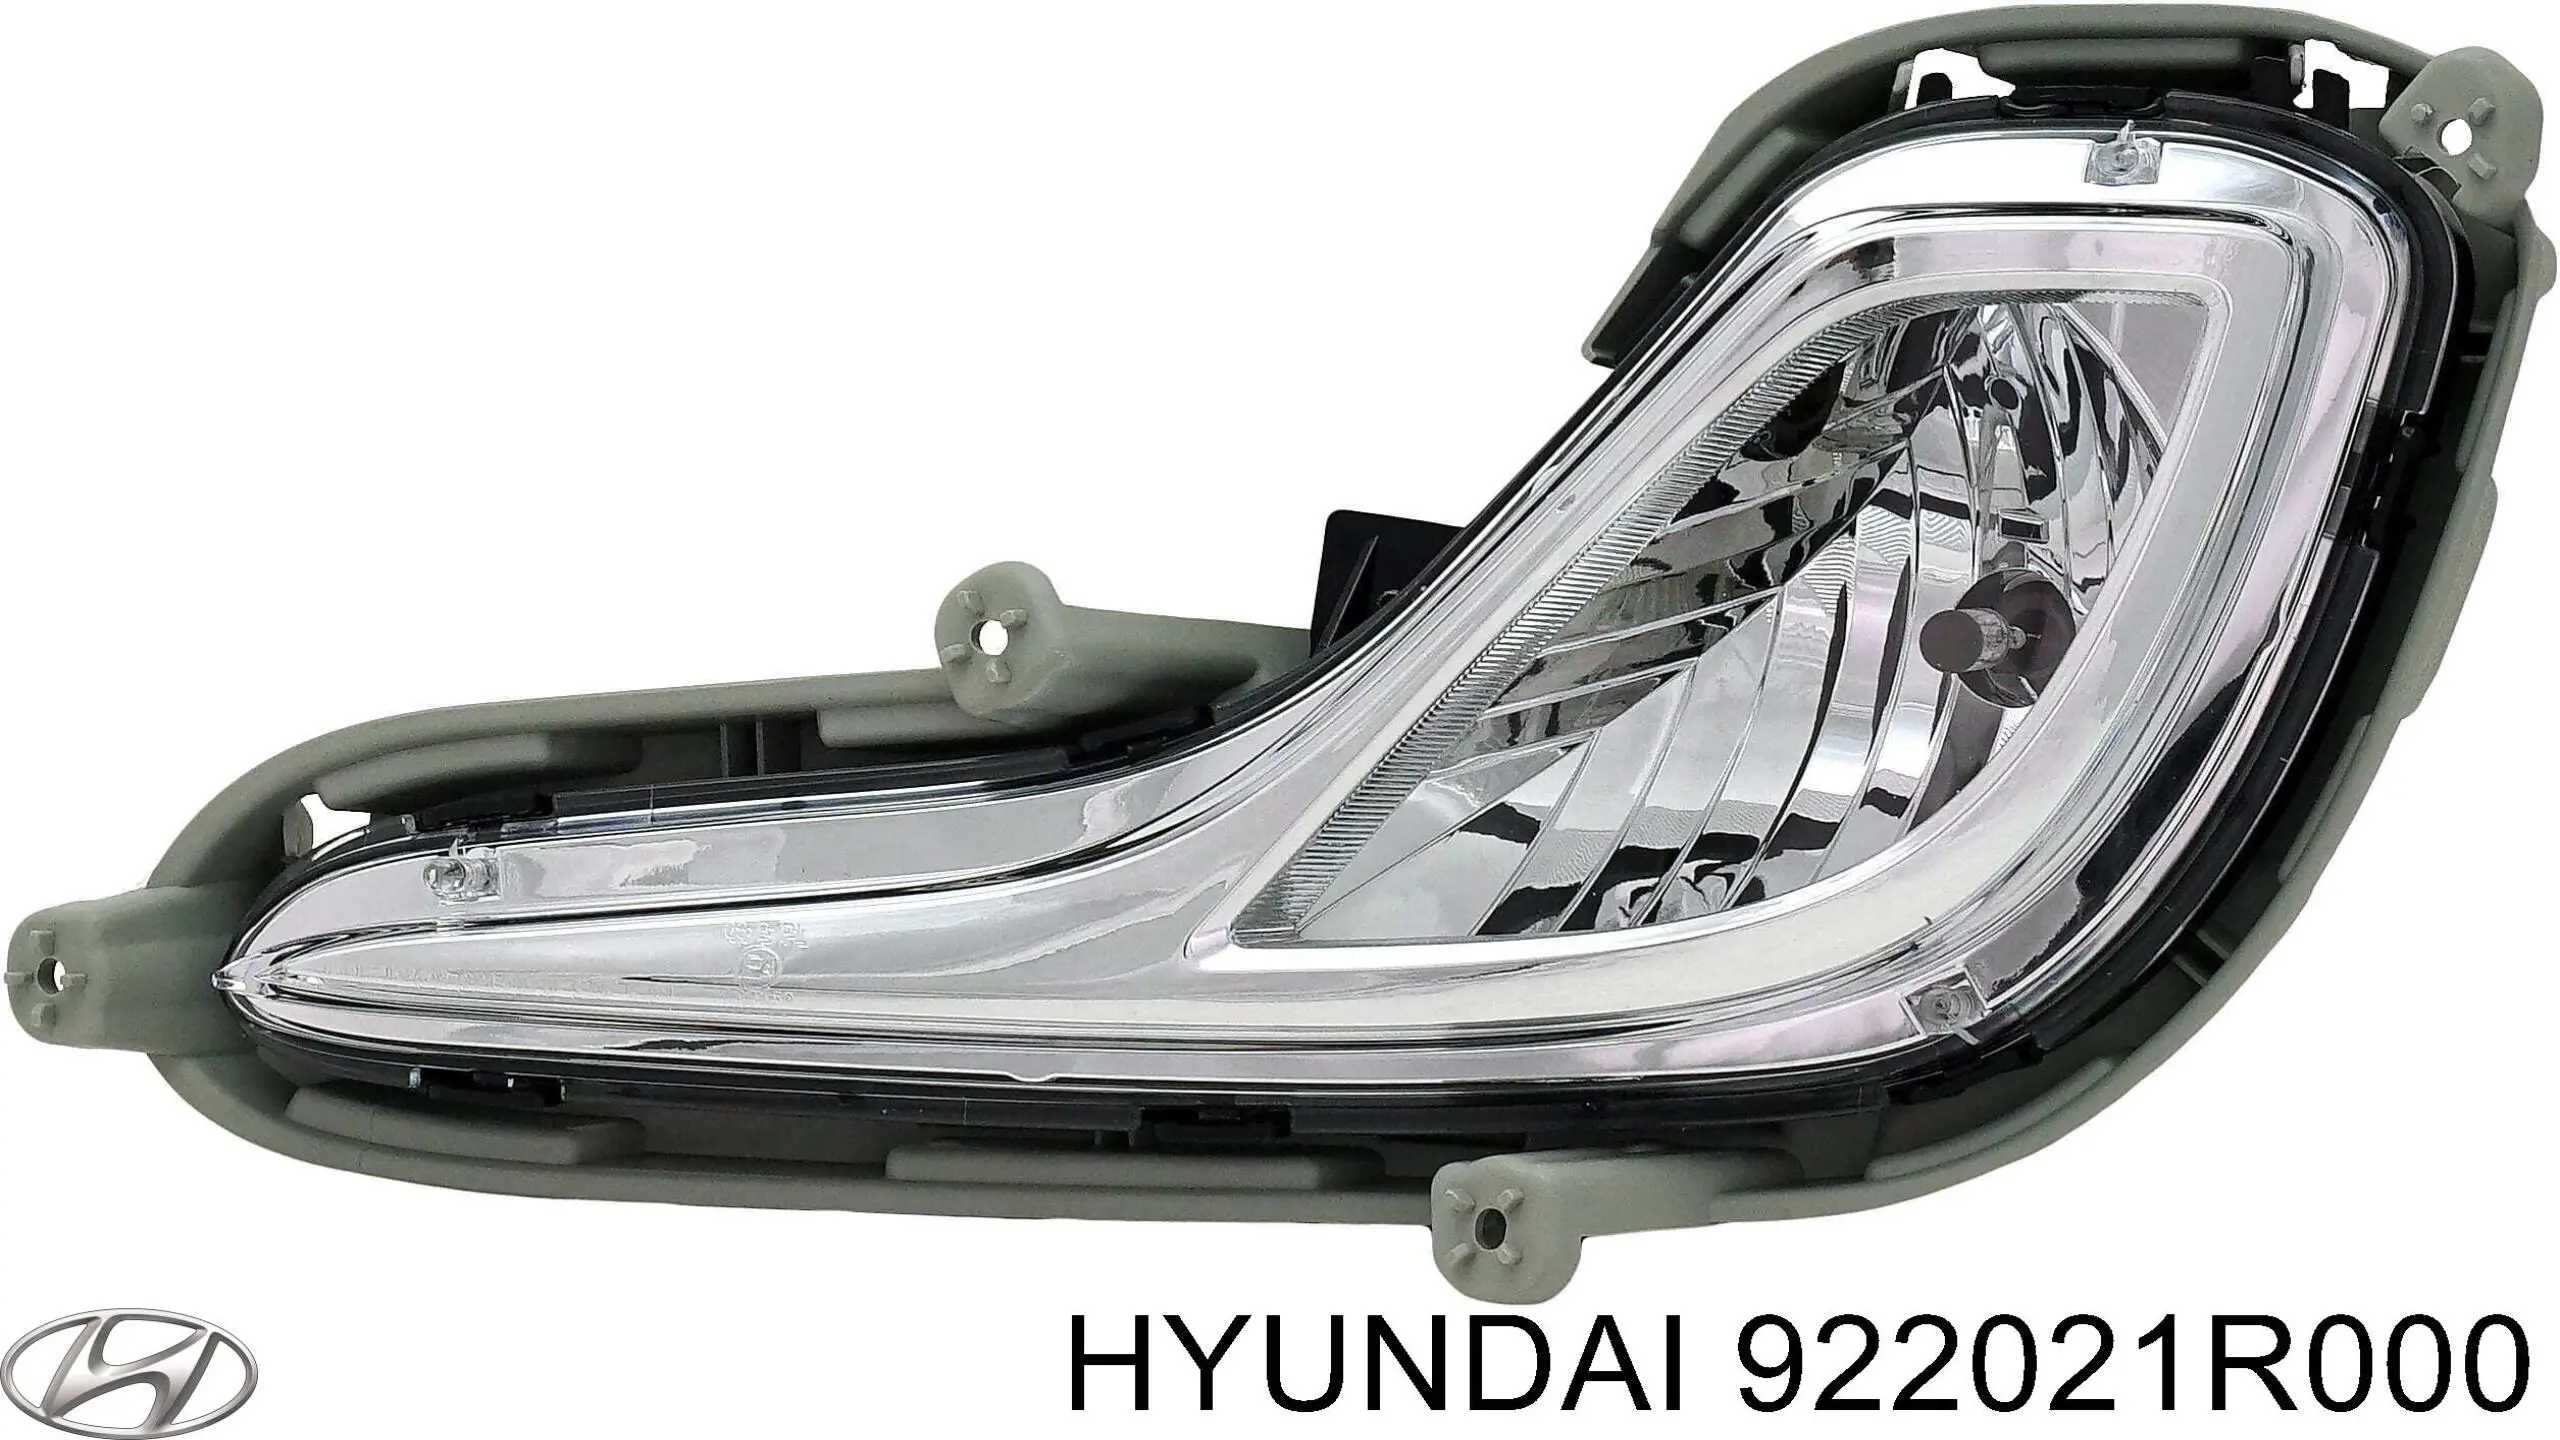 922021R000 Hyundai/Kia faro antiniebla derecho